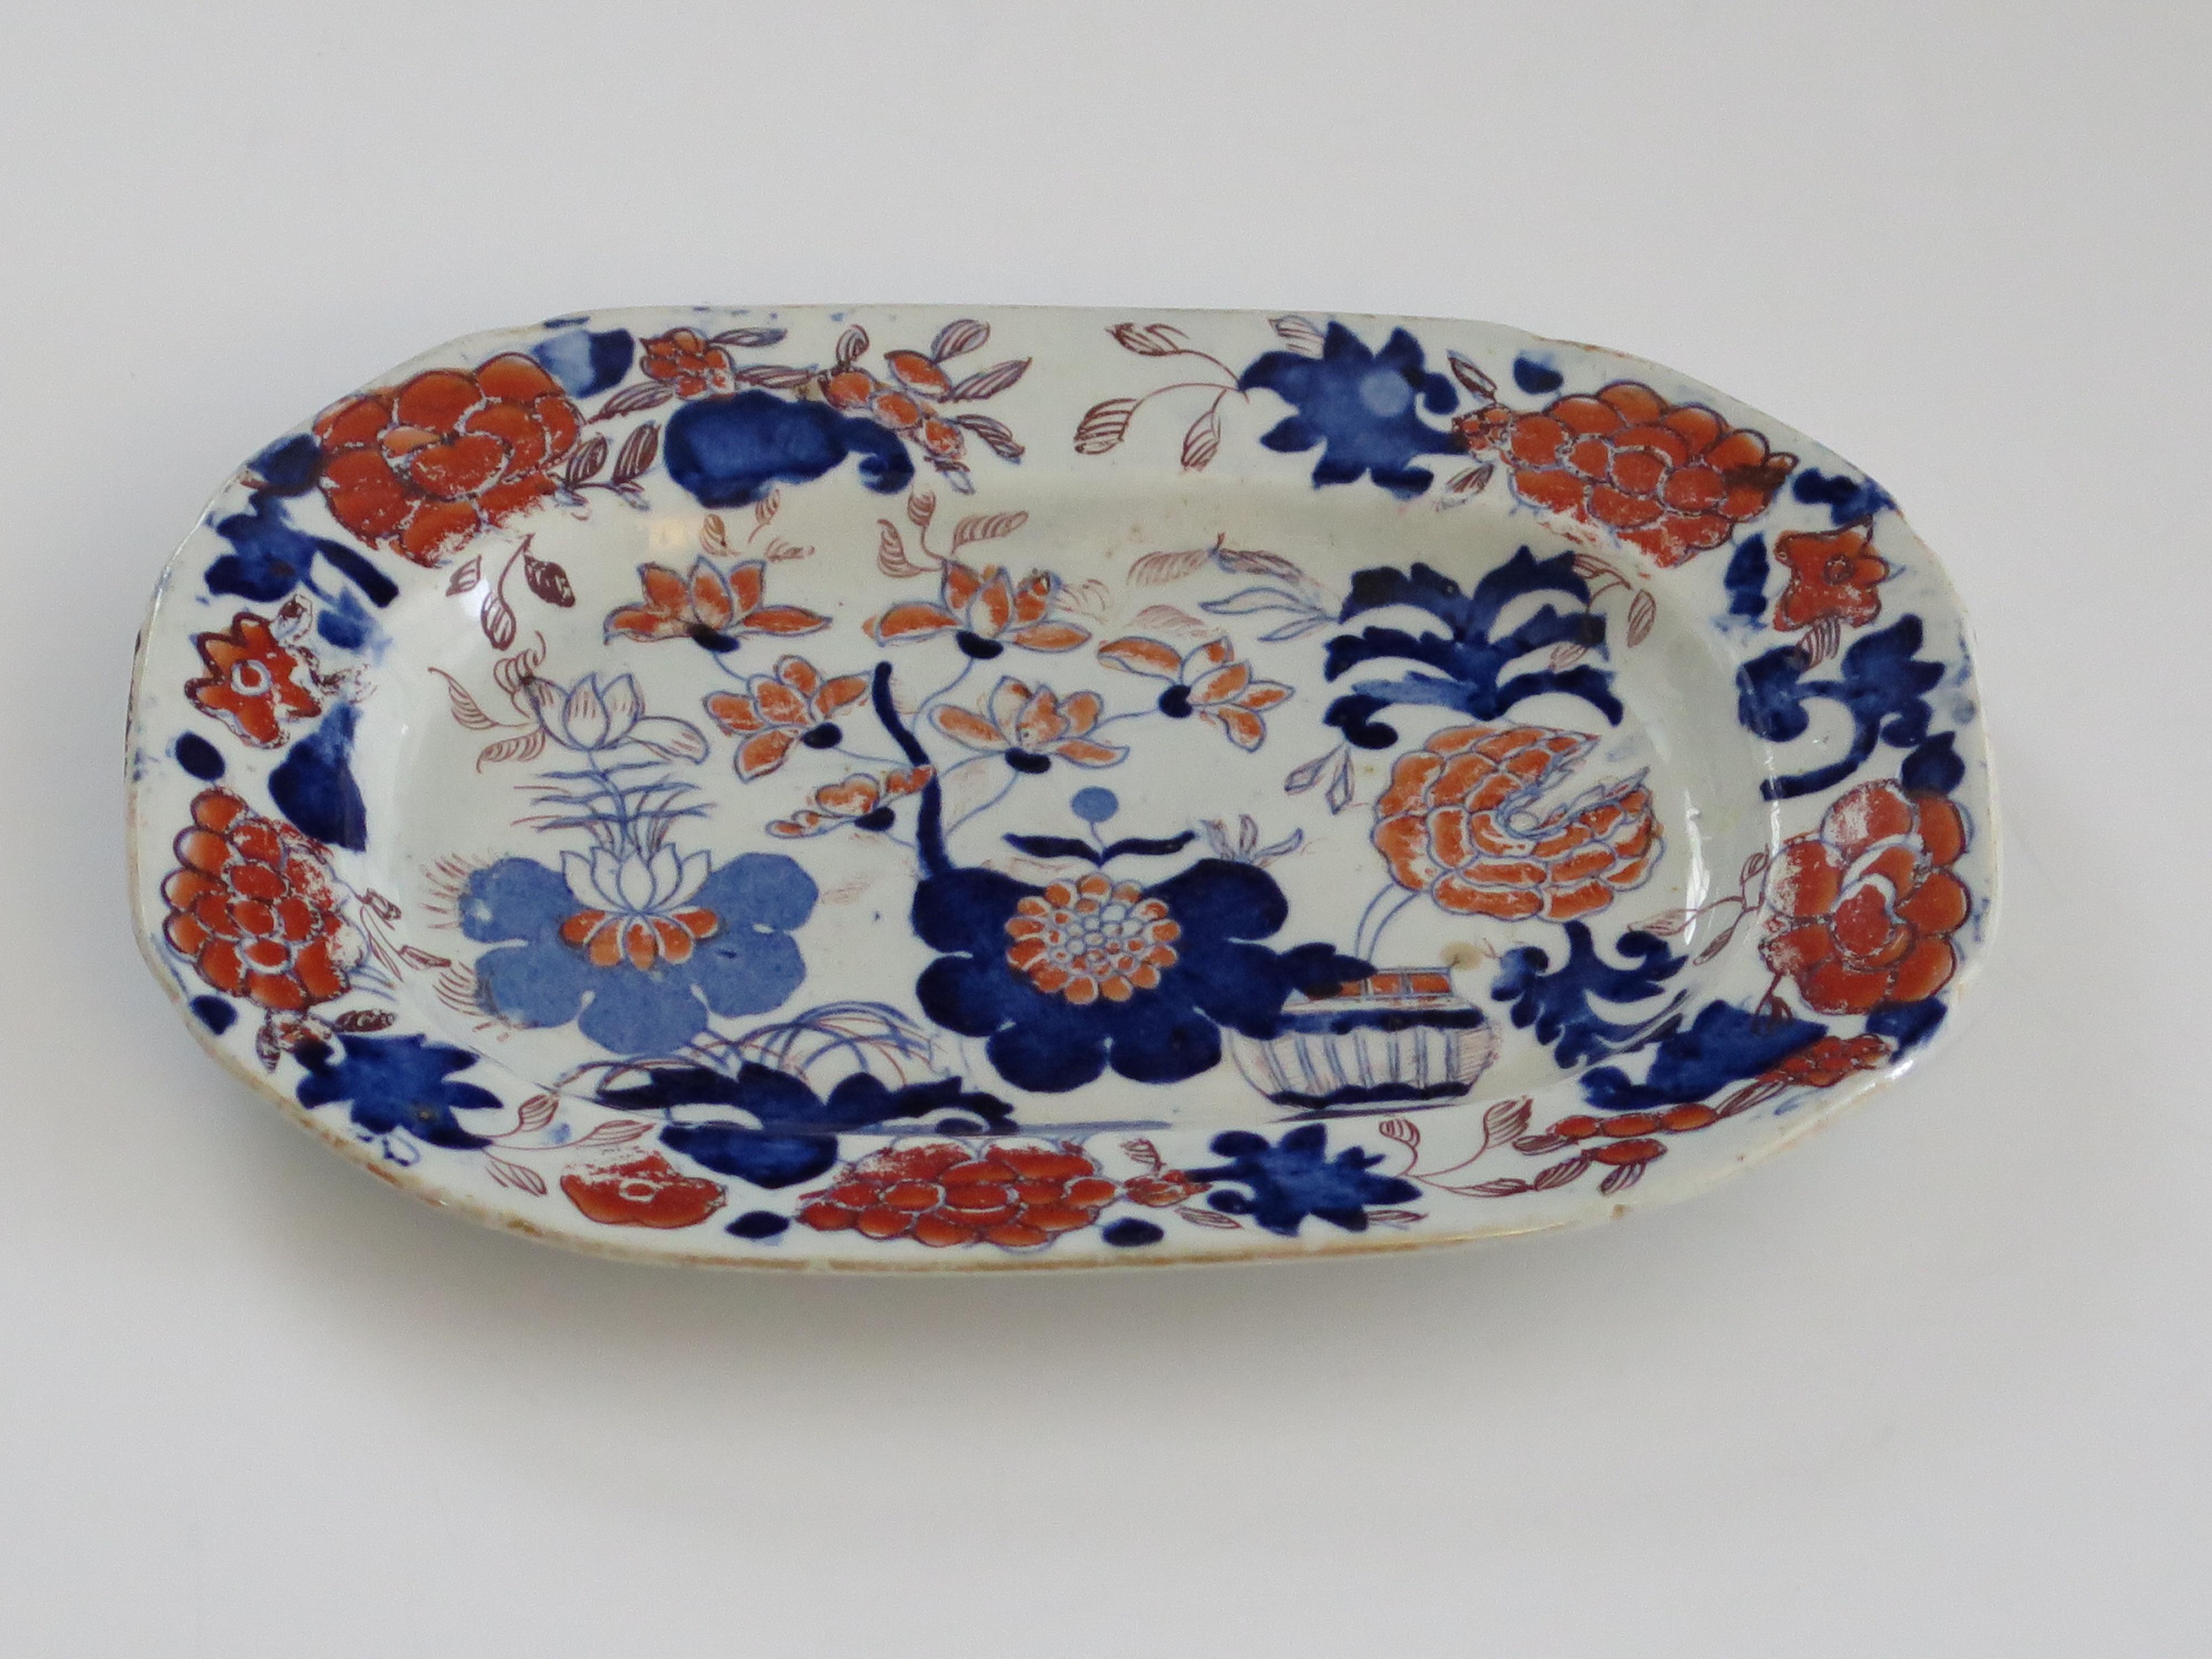 Il s'agit d'un petit plat rectangulaire en poterie Mason's Ironstone, peint à la main dans le motif très décoratif du panier japonais, produit par l'usine Mason's à Lane Delph, Staffordshire, Angleterre, pendant la période George 111, vers